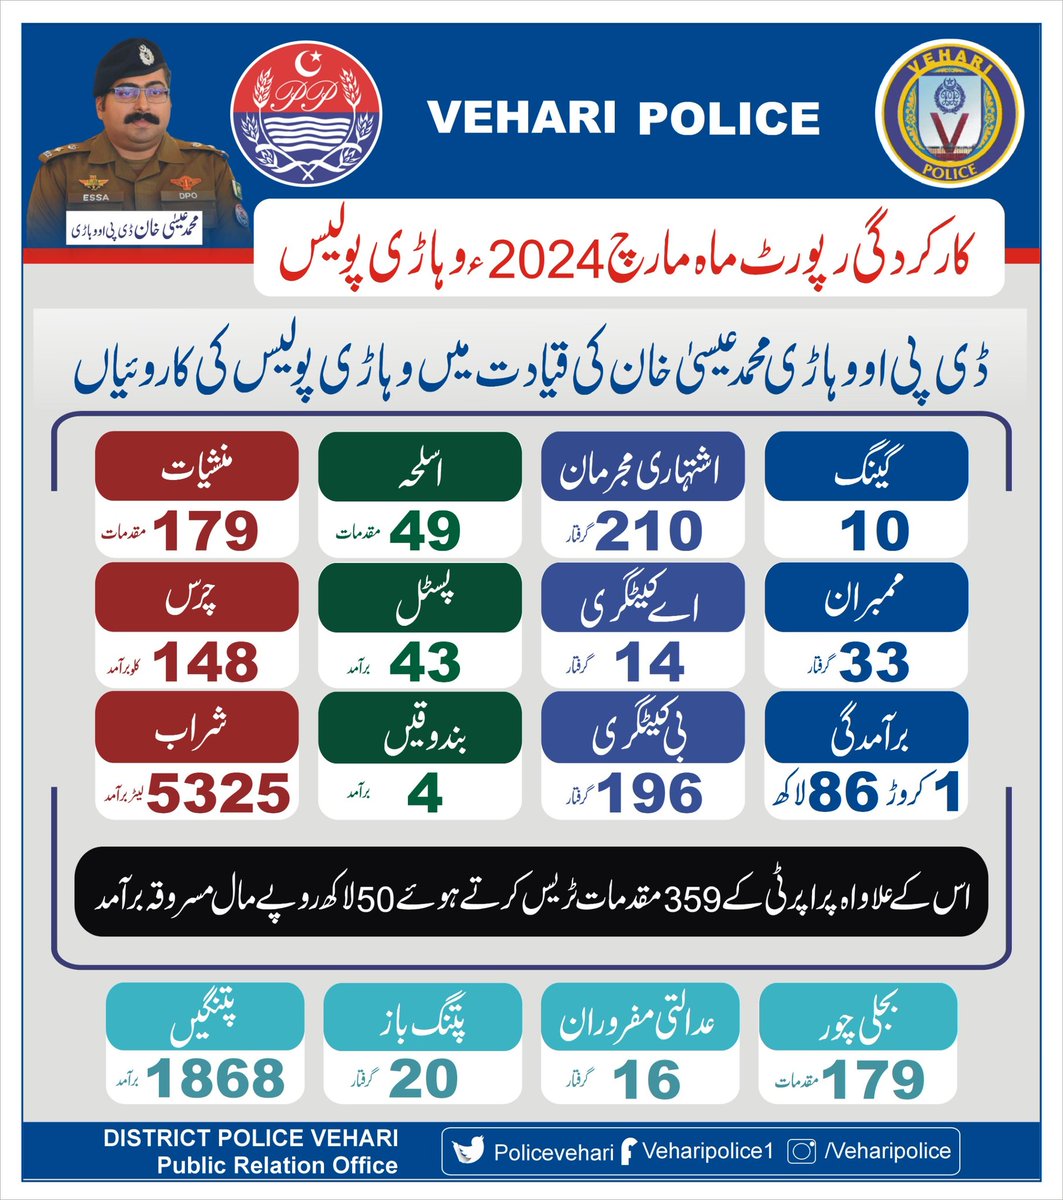 Vehari Police (@PoliceVehari) on Twitter photo 2024-04-04 09:56:41